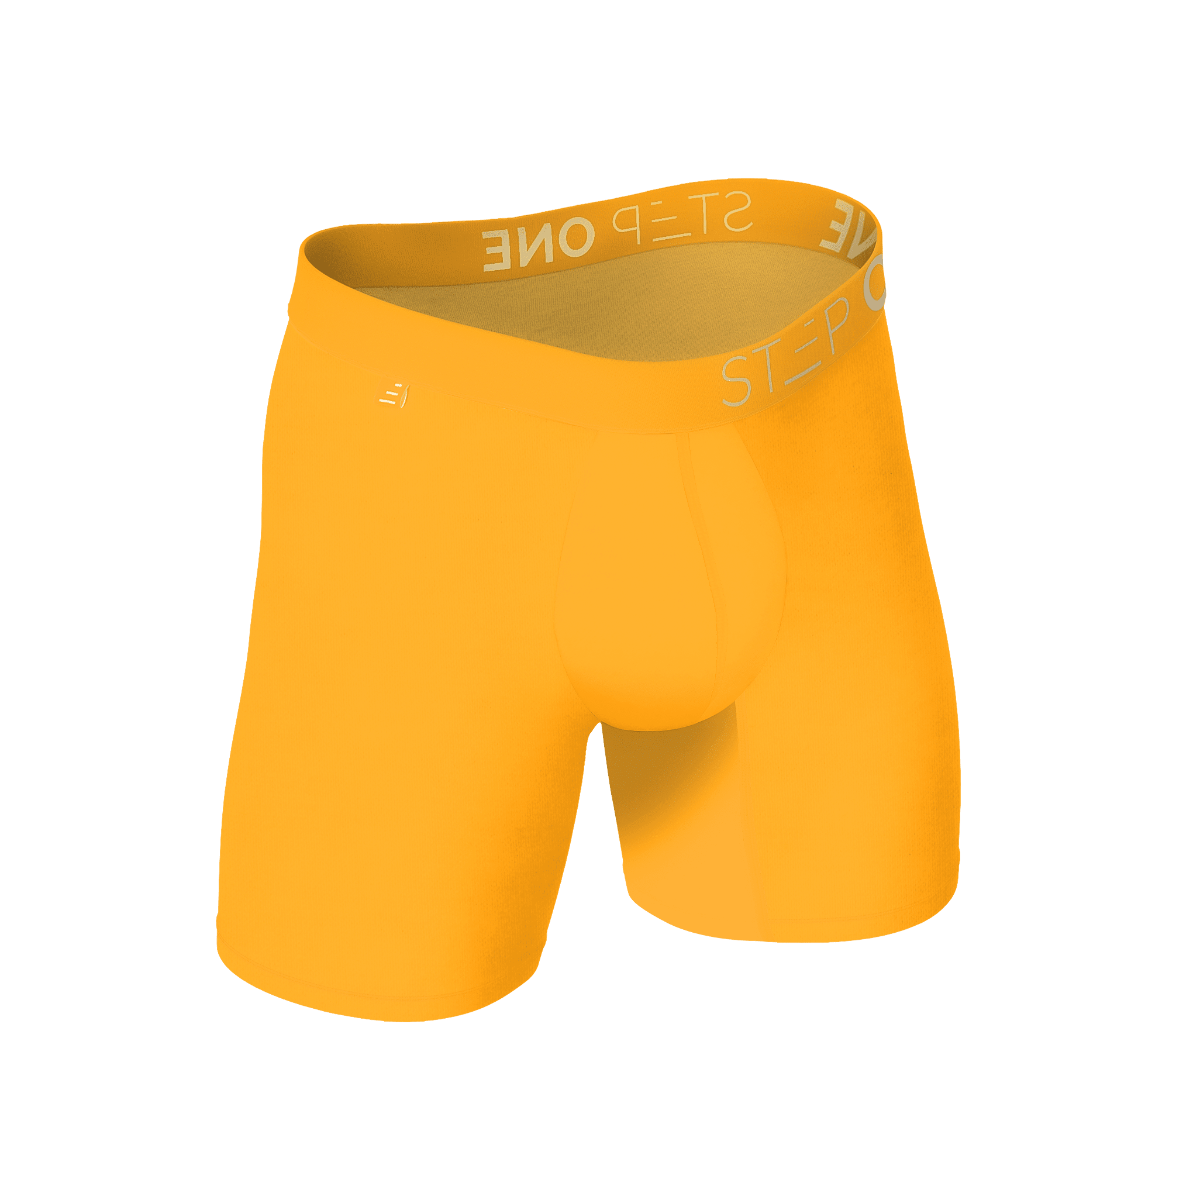 Mens Bamboo Underwear - Yellow Underwear